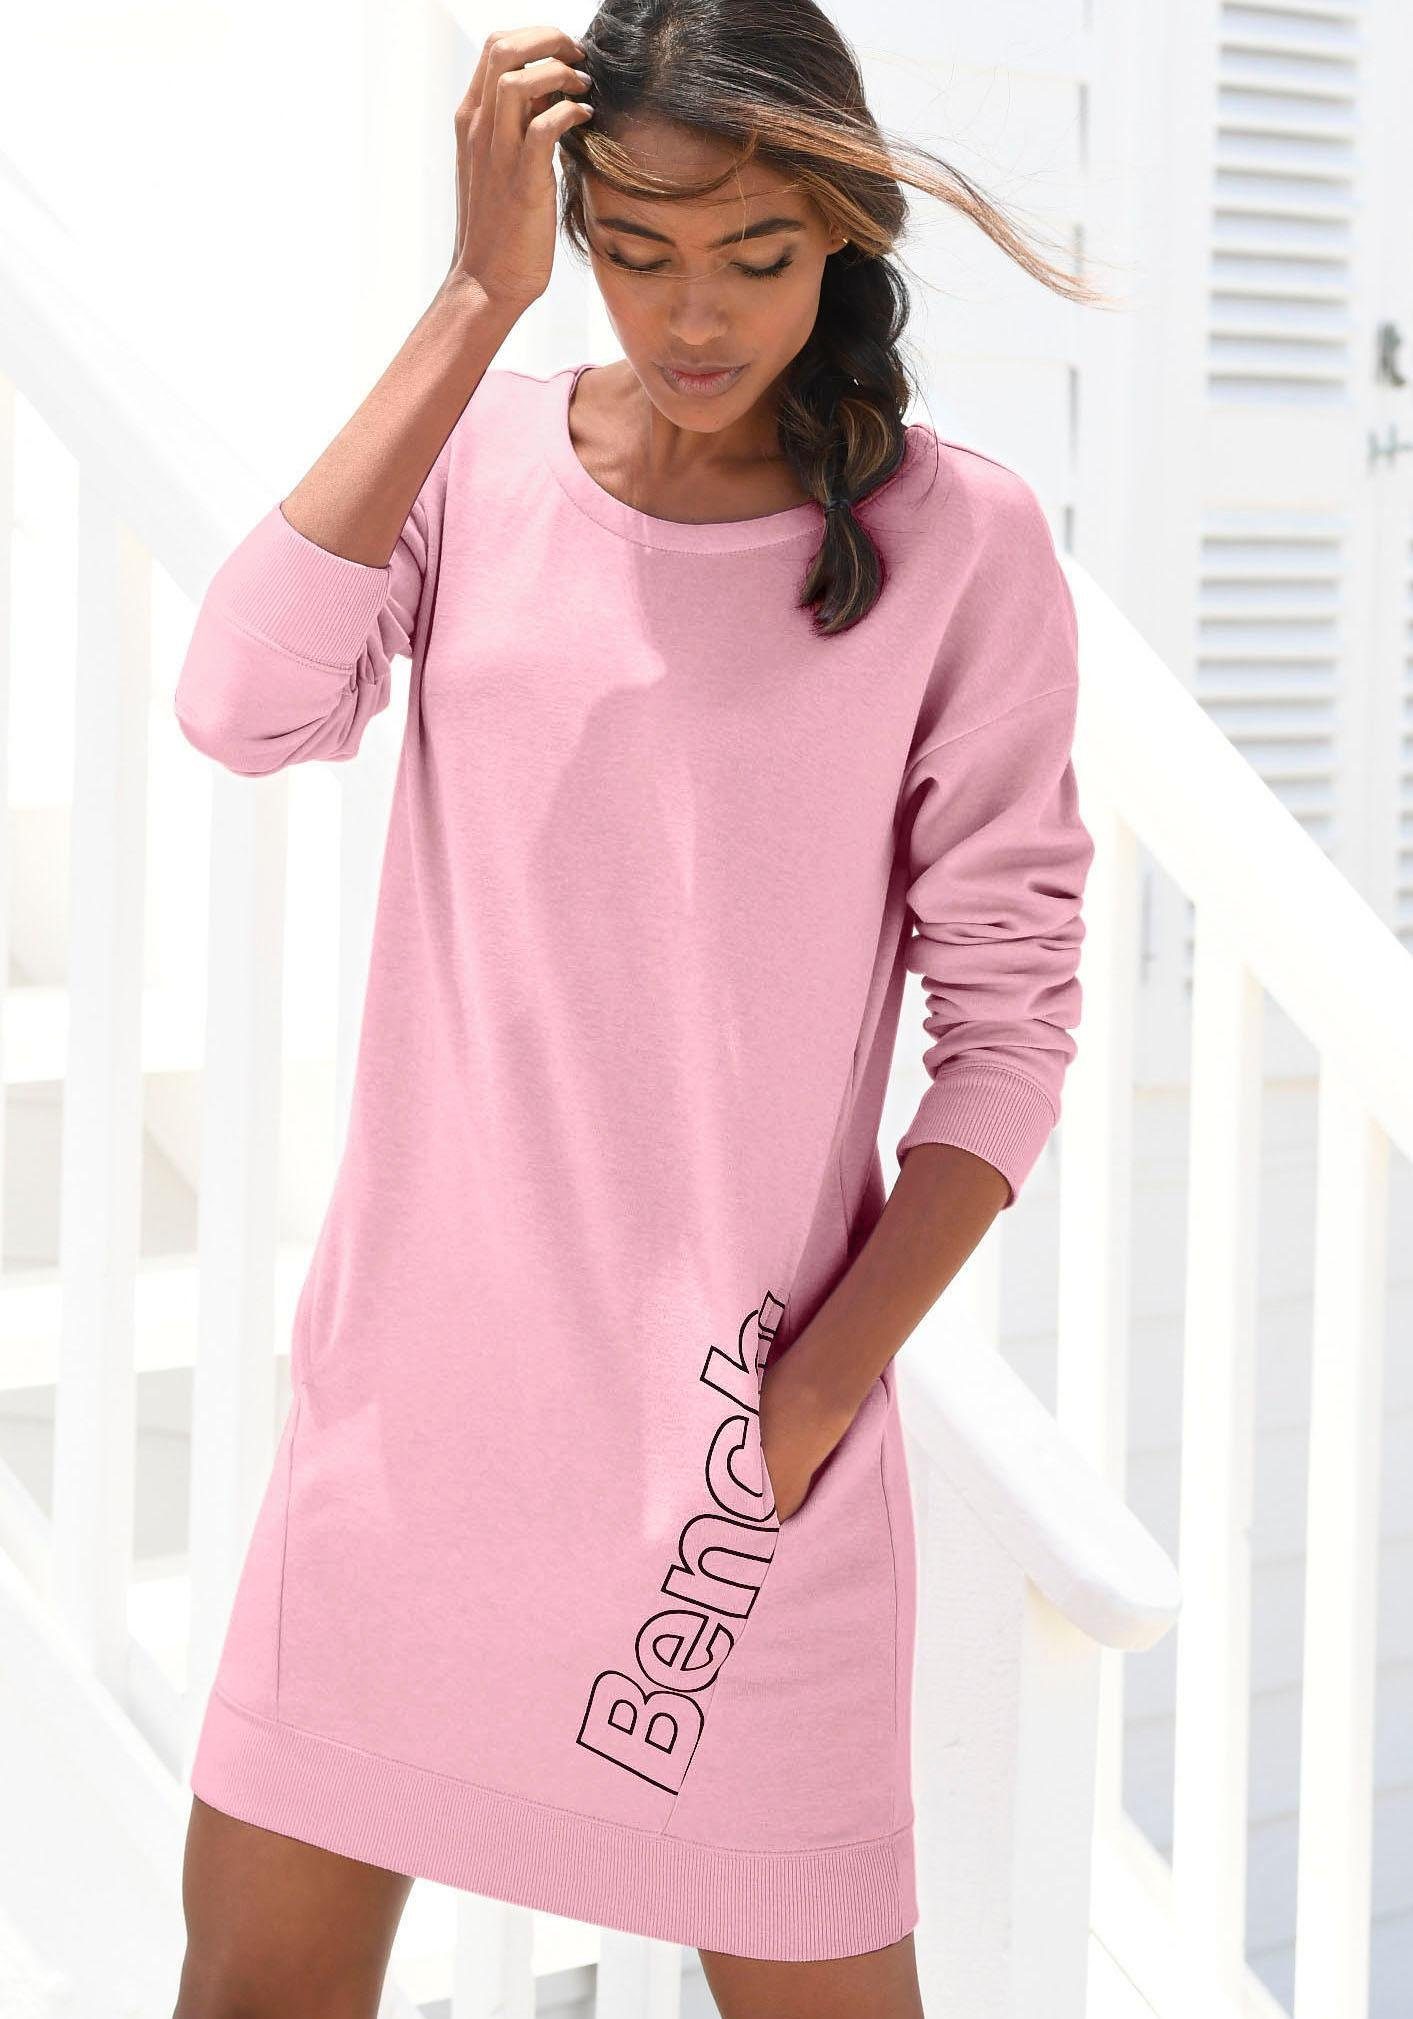 Rosa Langarm-Kleid online kaufen » Pinkes Langarm-Kleid | OTTO